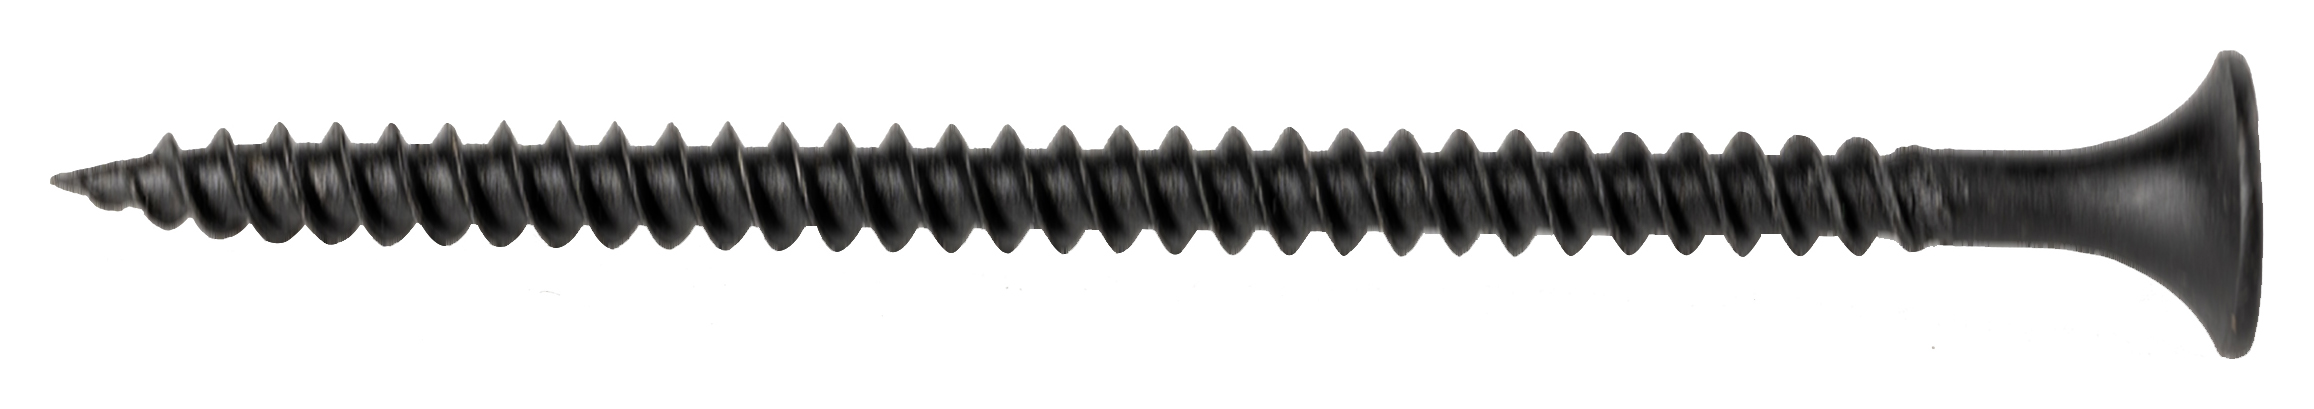 Wickes Fine Thread Black Phosphated Plasterboard Screws - 60mm - Pack of 200